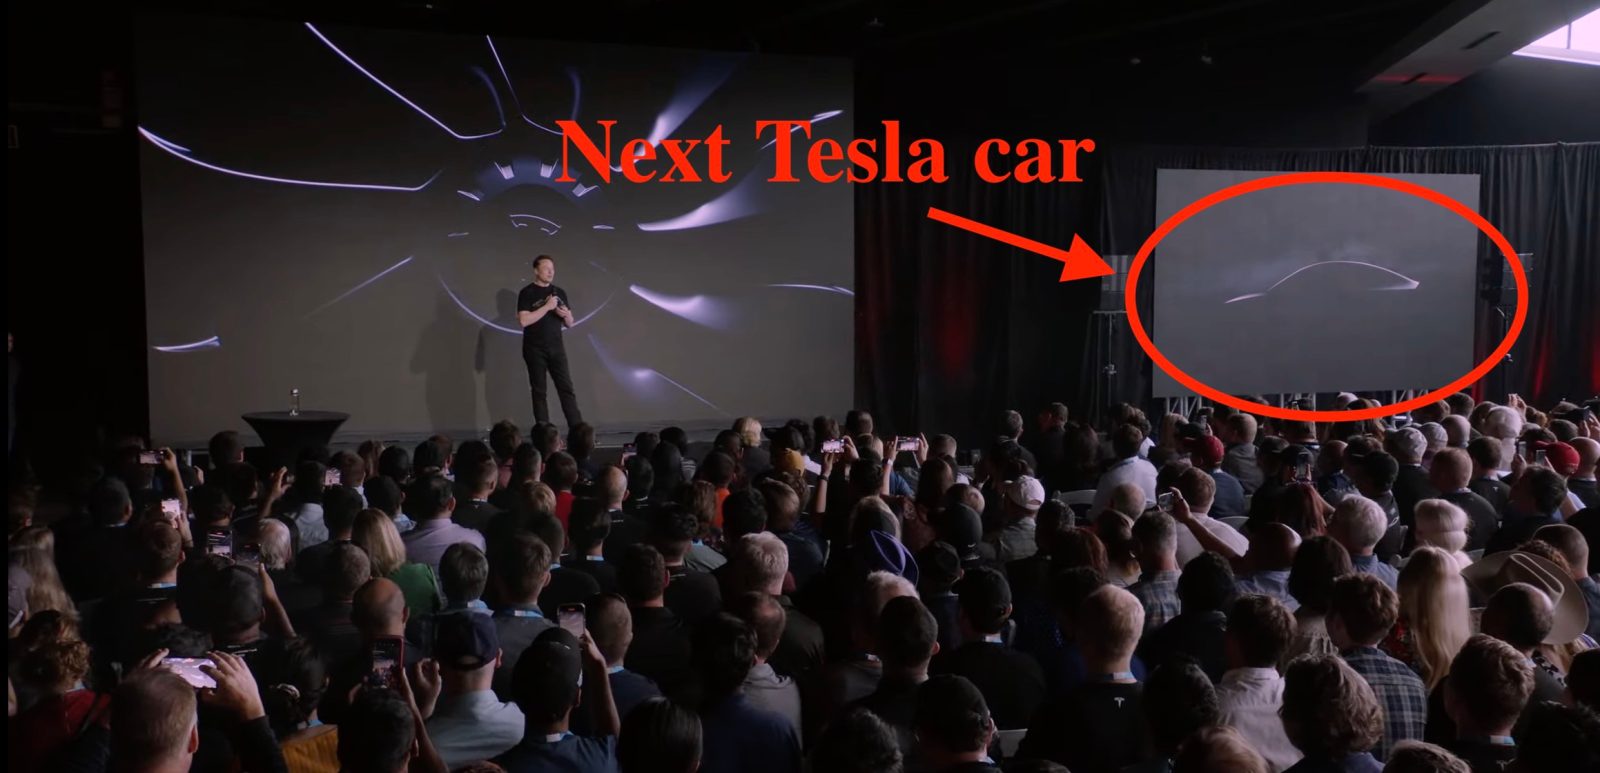 Tesla next car hero